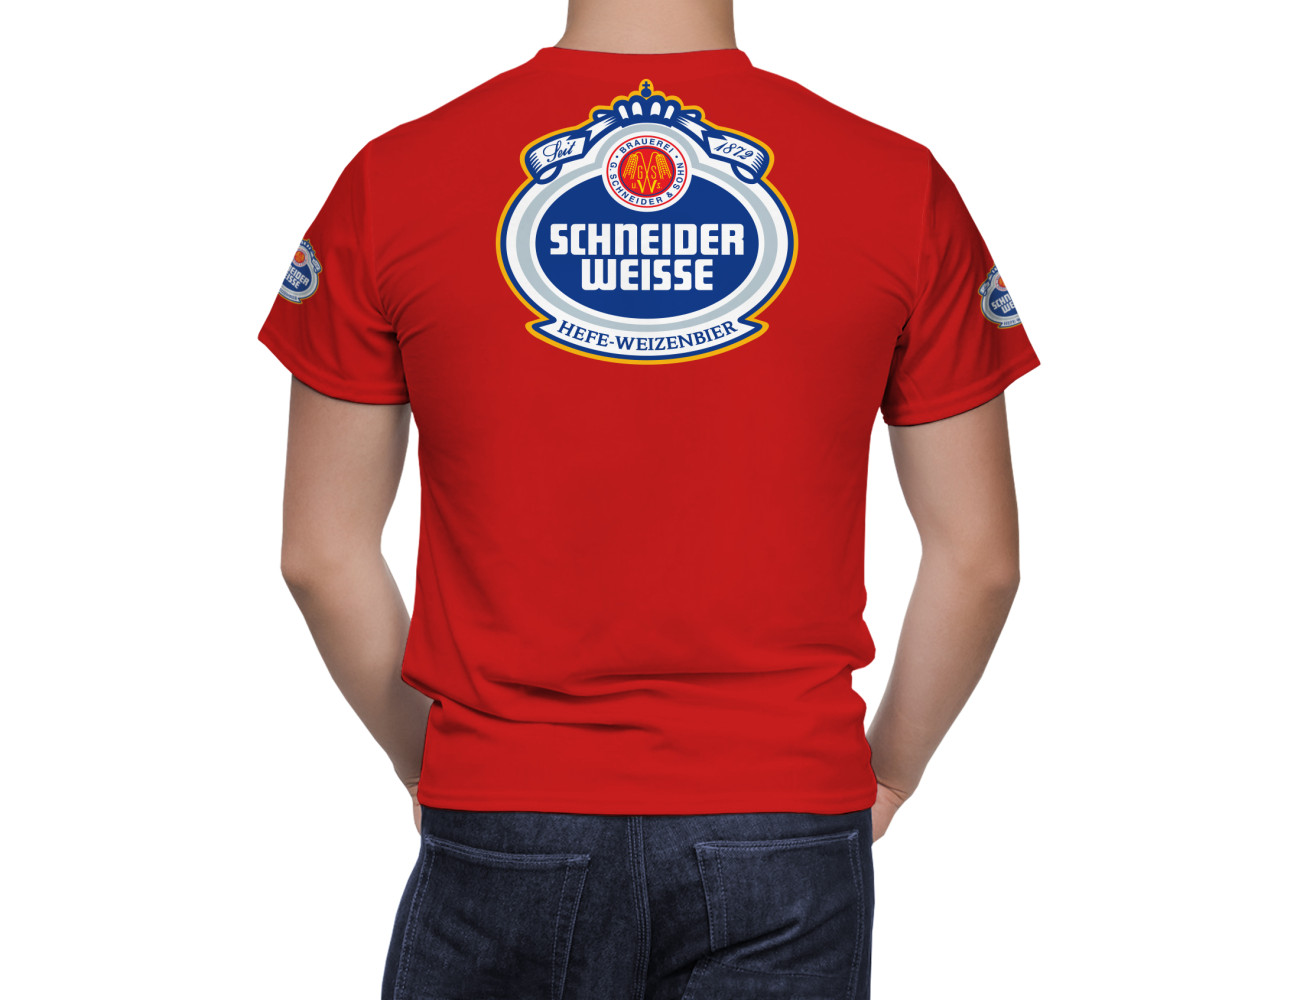 Schneider Weisse Beer T-Shirt